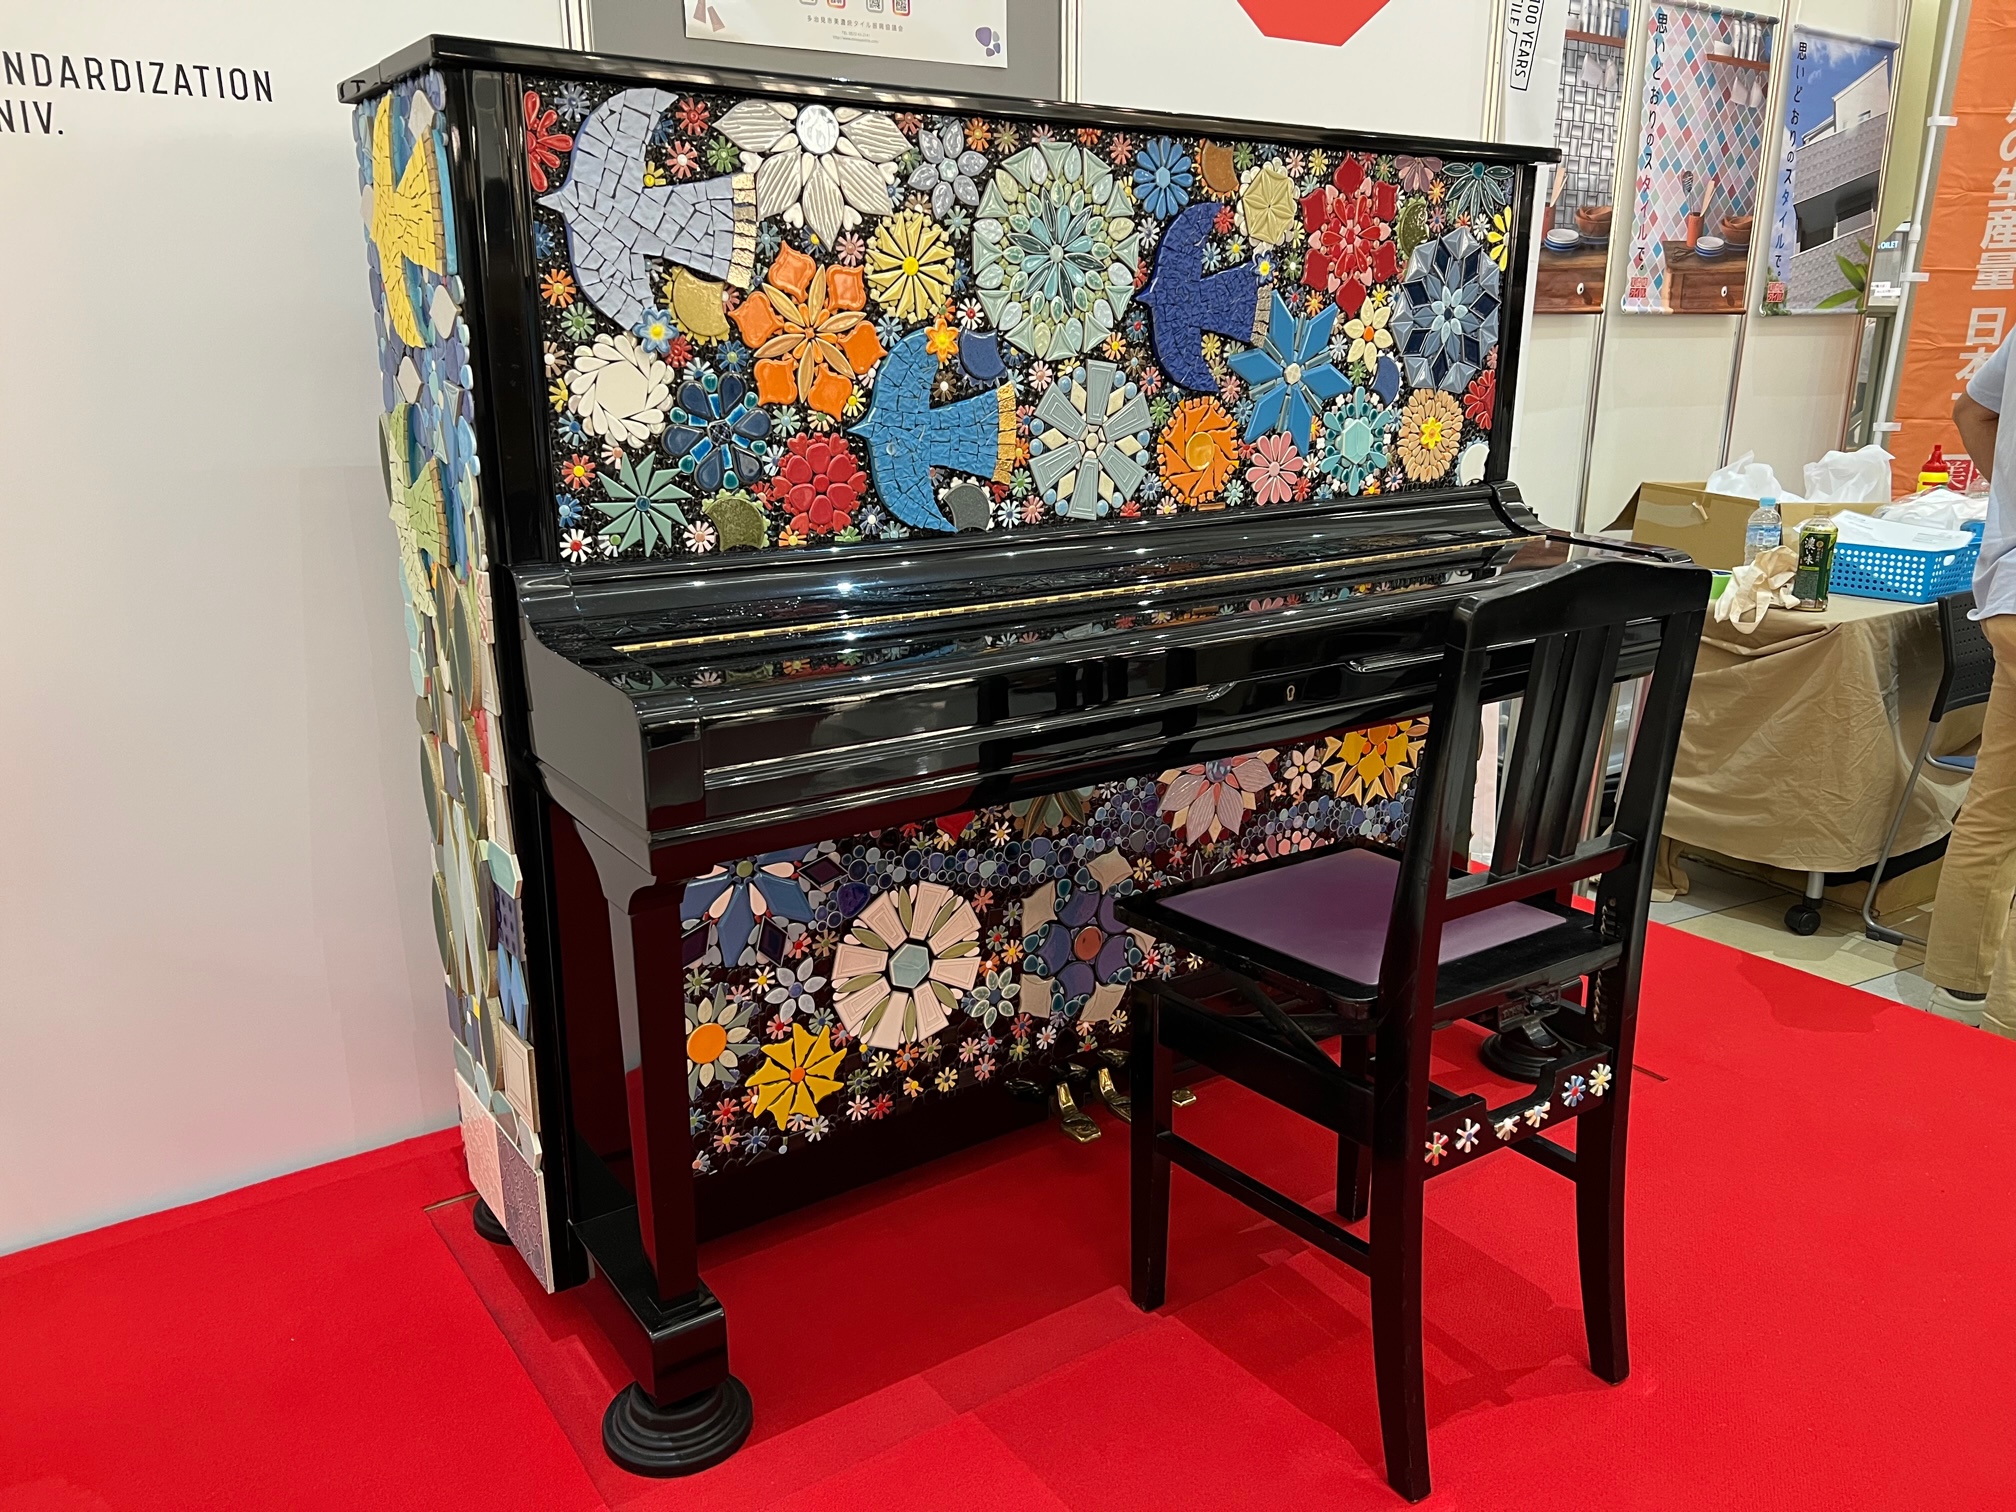 こんにちは。ピアノインストラクターの武藤です。 9/18(日)にイオンモール大高店の1Fイエローコートにお花屋や鳥など、色とりどりのモザイクタイルでデコレーションされた「タイルピアノ」が展示されました。 「タイルピアノ」とは？ 「タイル名称統一100周年」を記念して、タイルの生産量日本一の岐阜県多治 […]